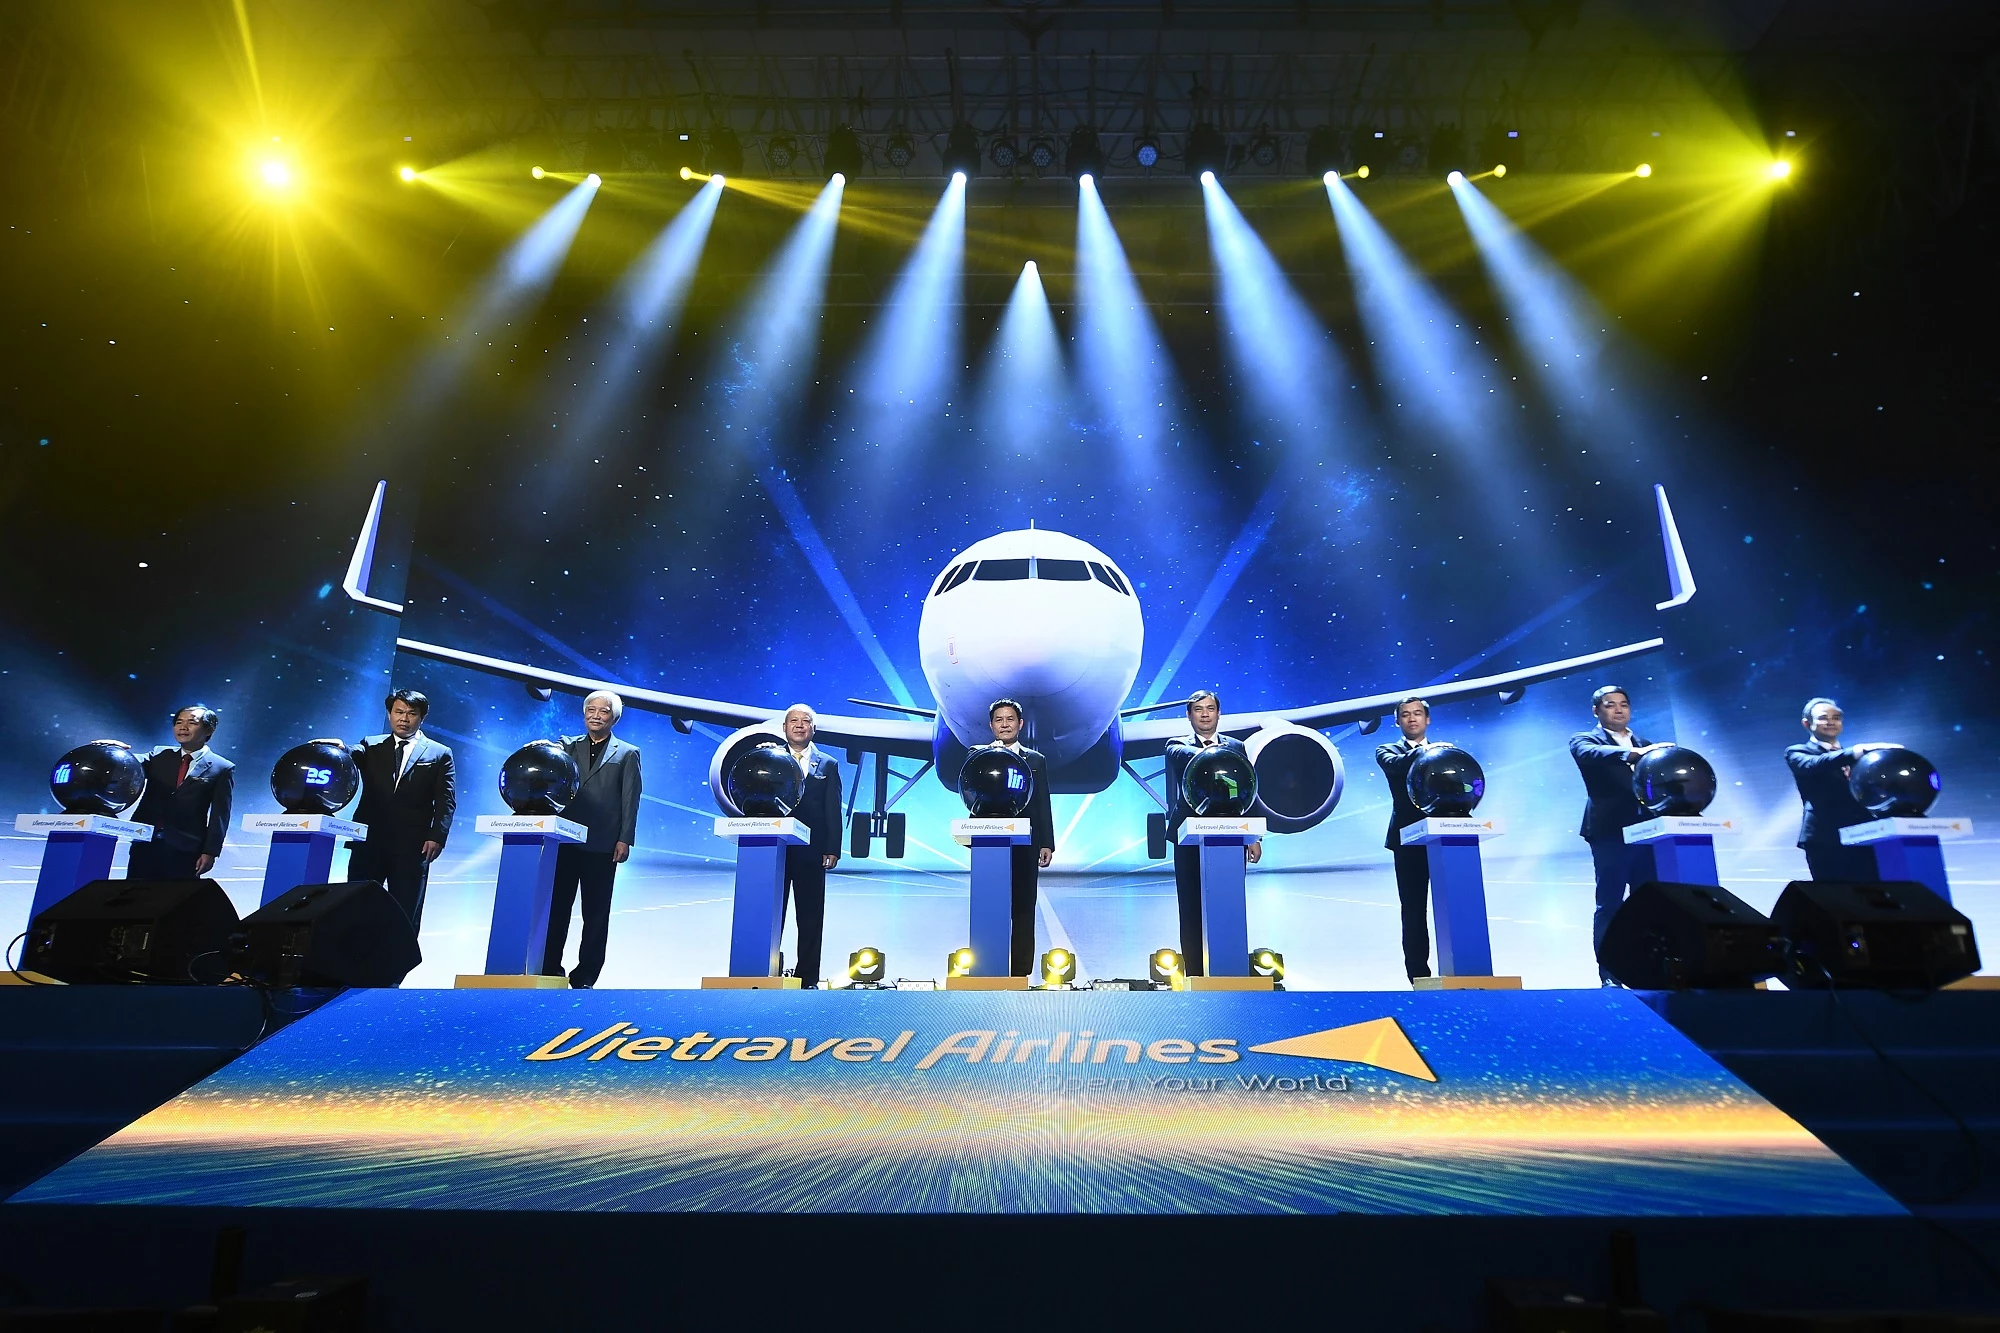 Hãng hàng không lữ hành đầu tiên của Việt Nam – Vietravel Airlines vừa chính thức ra mắt sau hơn 1.000 ngày kể từ khi có đề án thành lập.